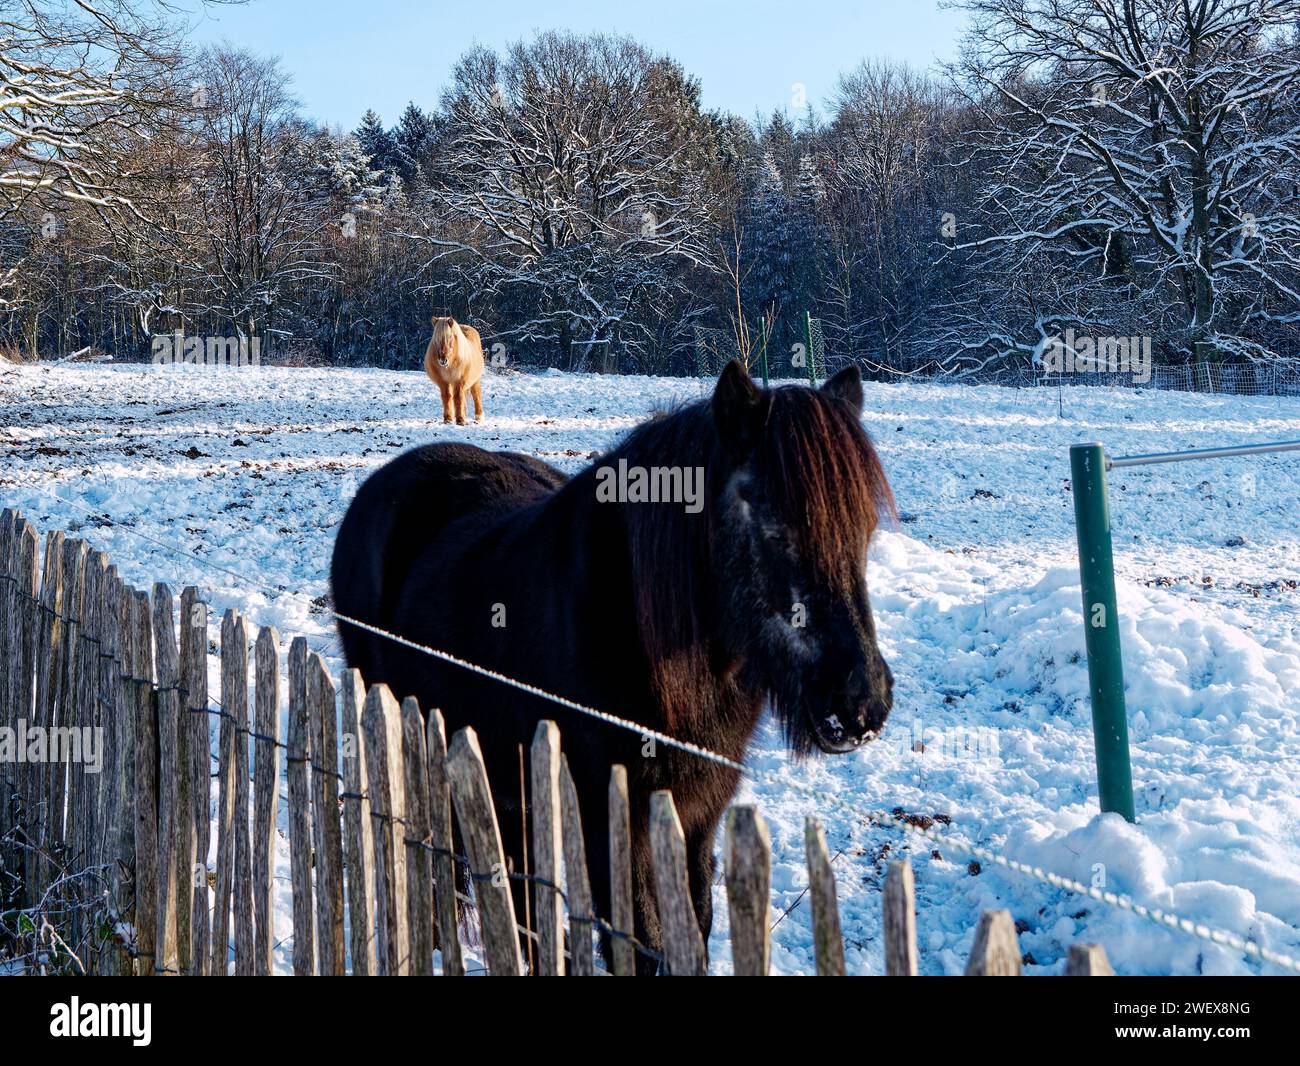 Zwei hübsche Ponys auf dem Reiterhof im glitzernden Schnee BEI Sonnenschein. Schönes Winter- und Januarbild. Banque D'Images